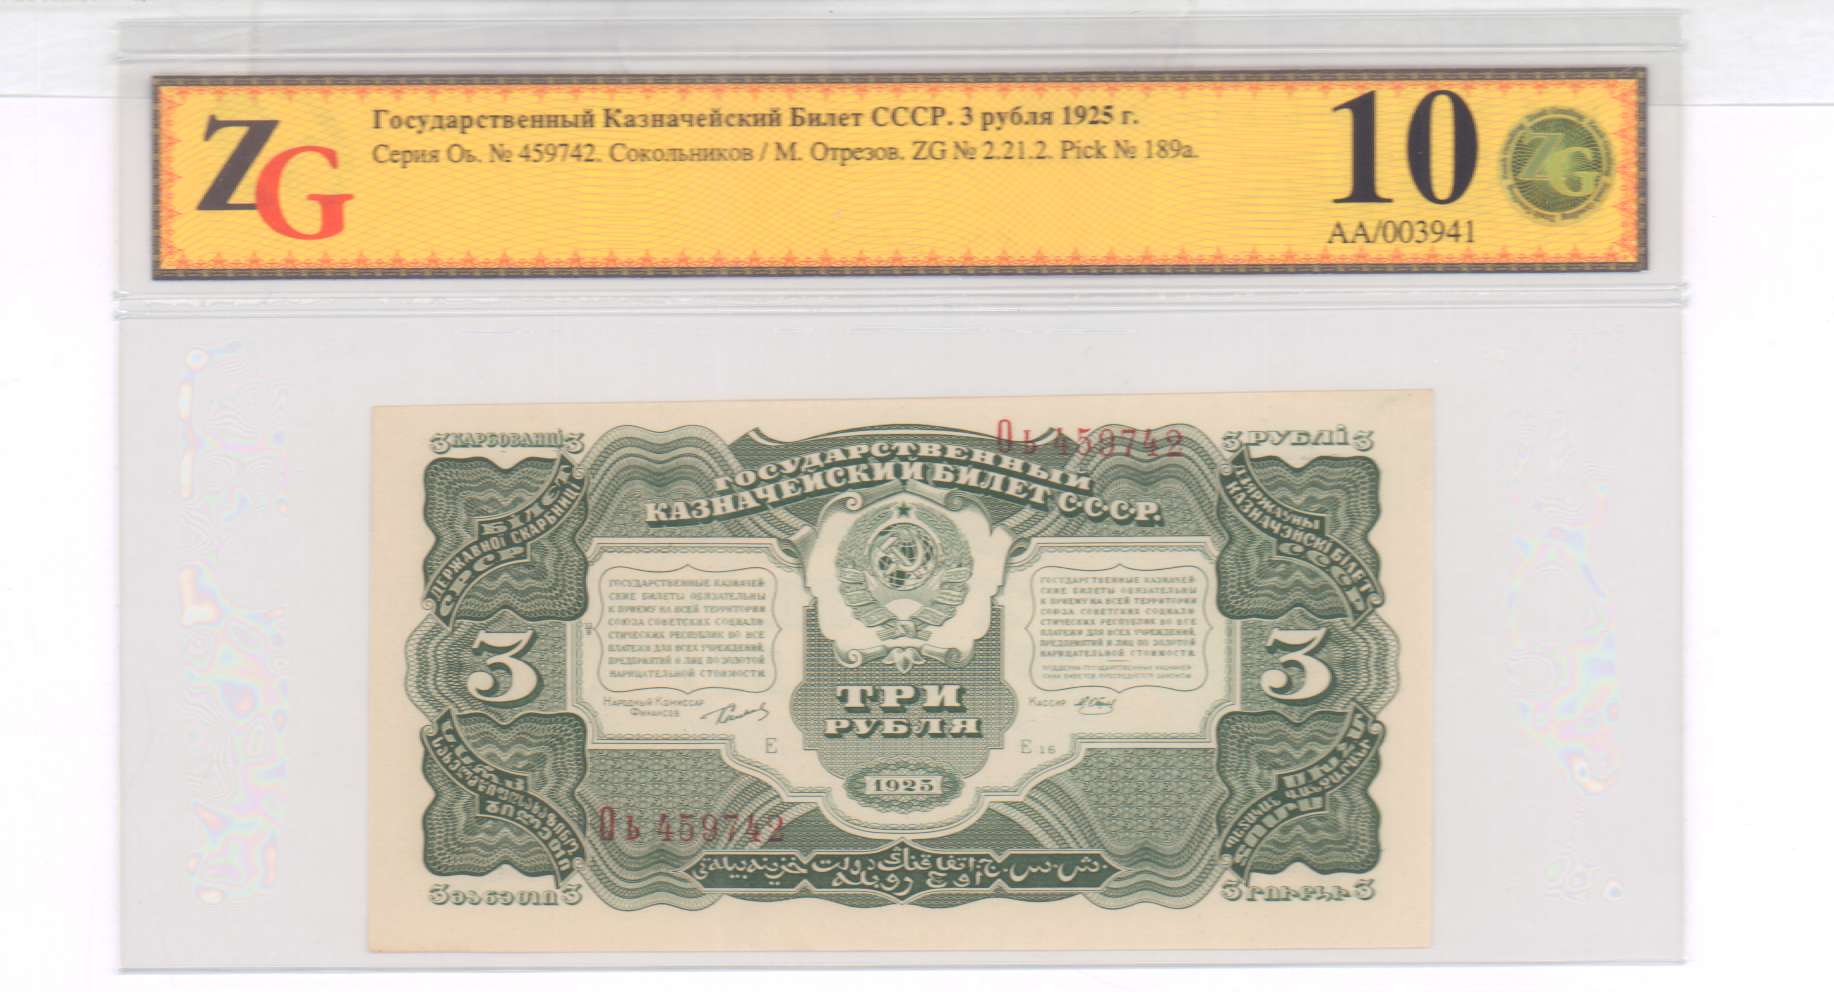 62 рубля 3. 3 Рубля 1925 UNC. 5 Рублей 1925. Купюра 1925 год в 3 рубля. Государственный казначейский билет.